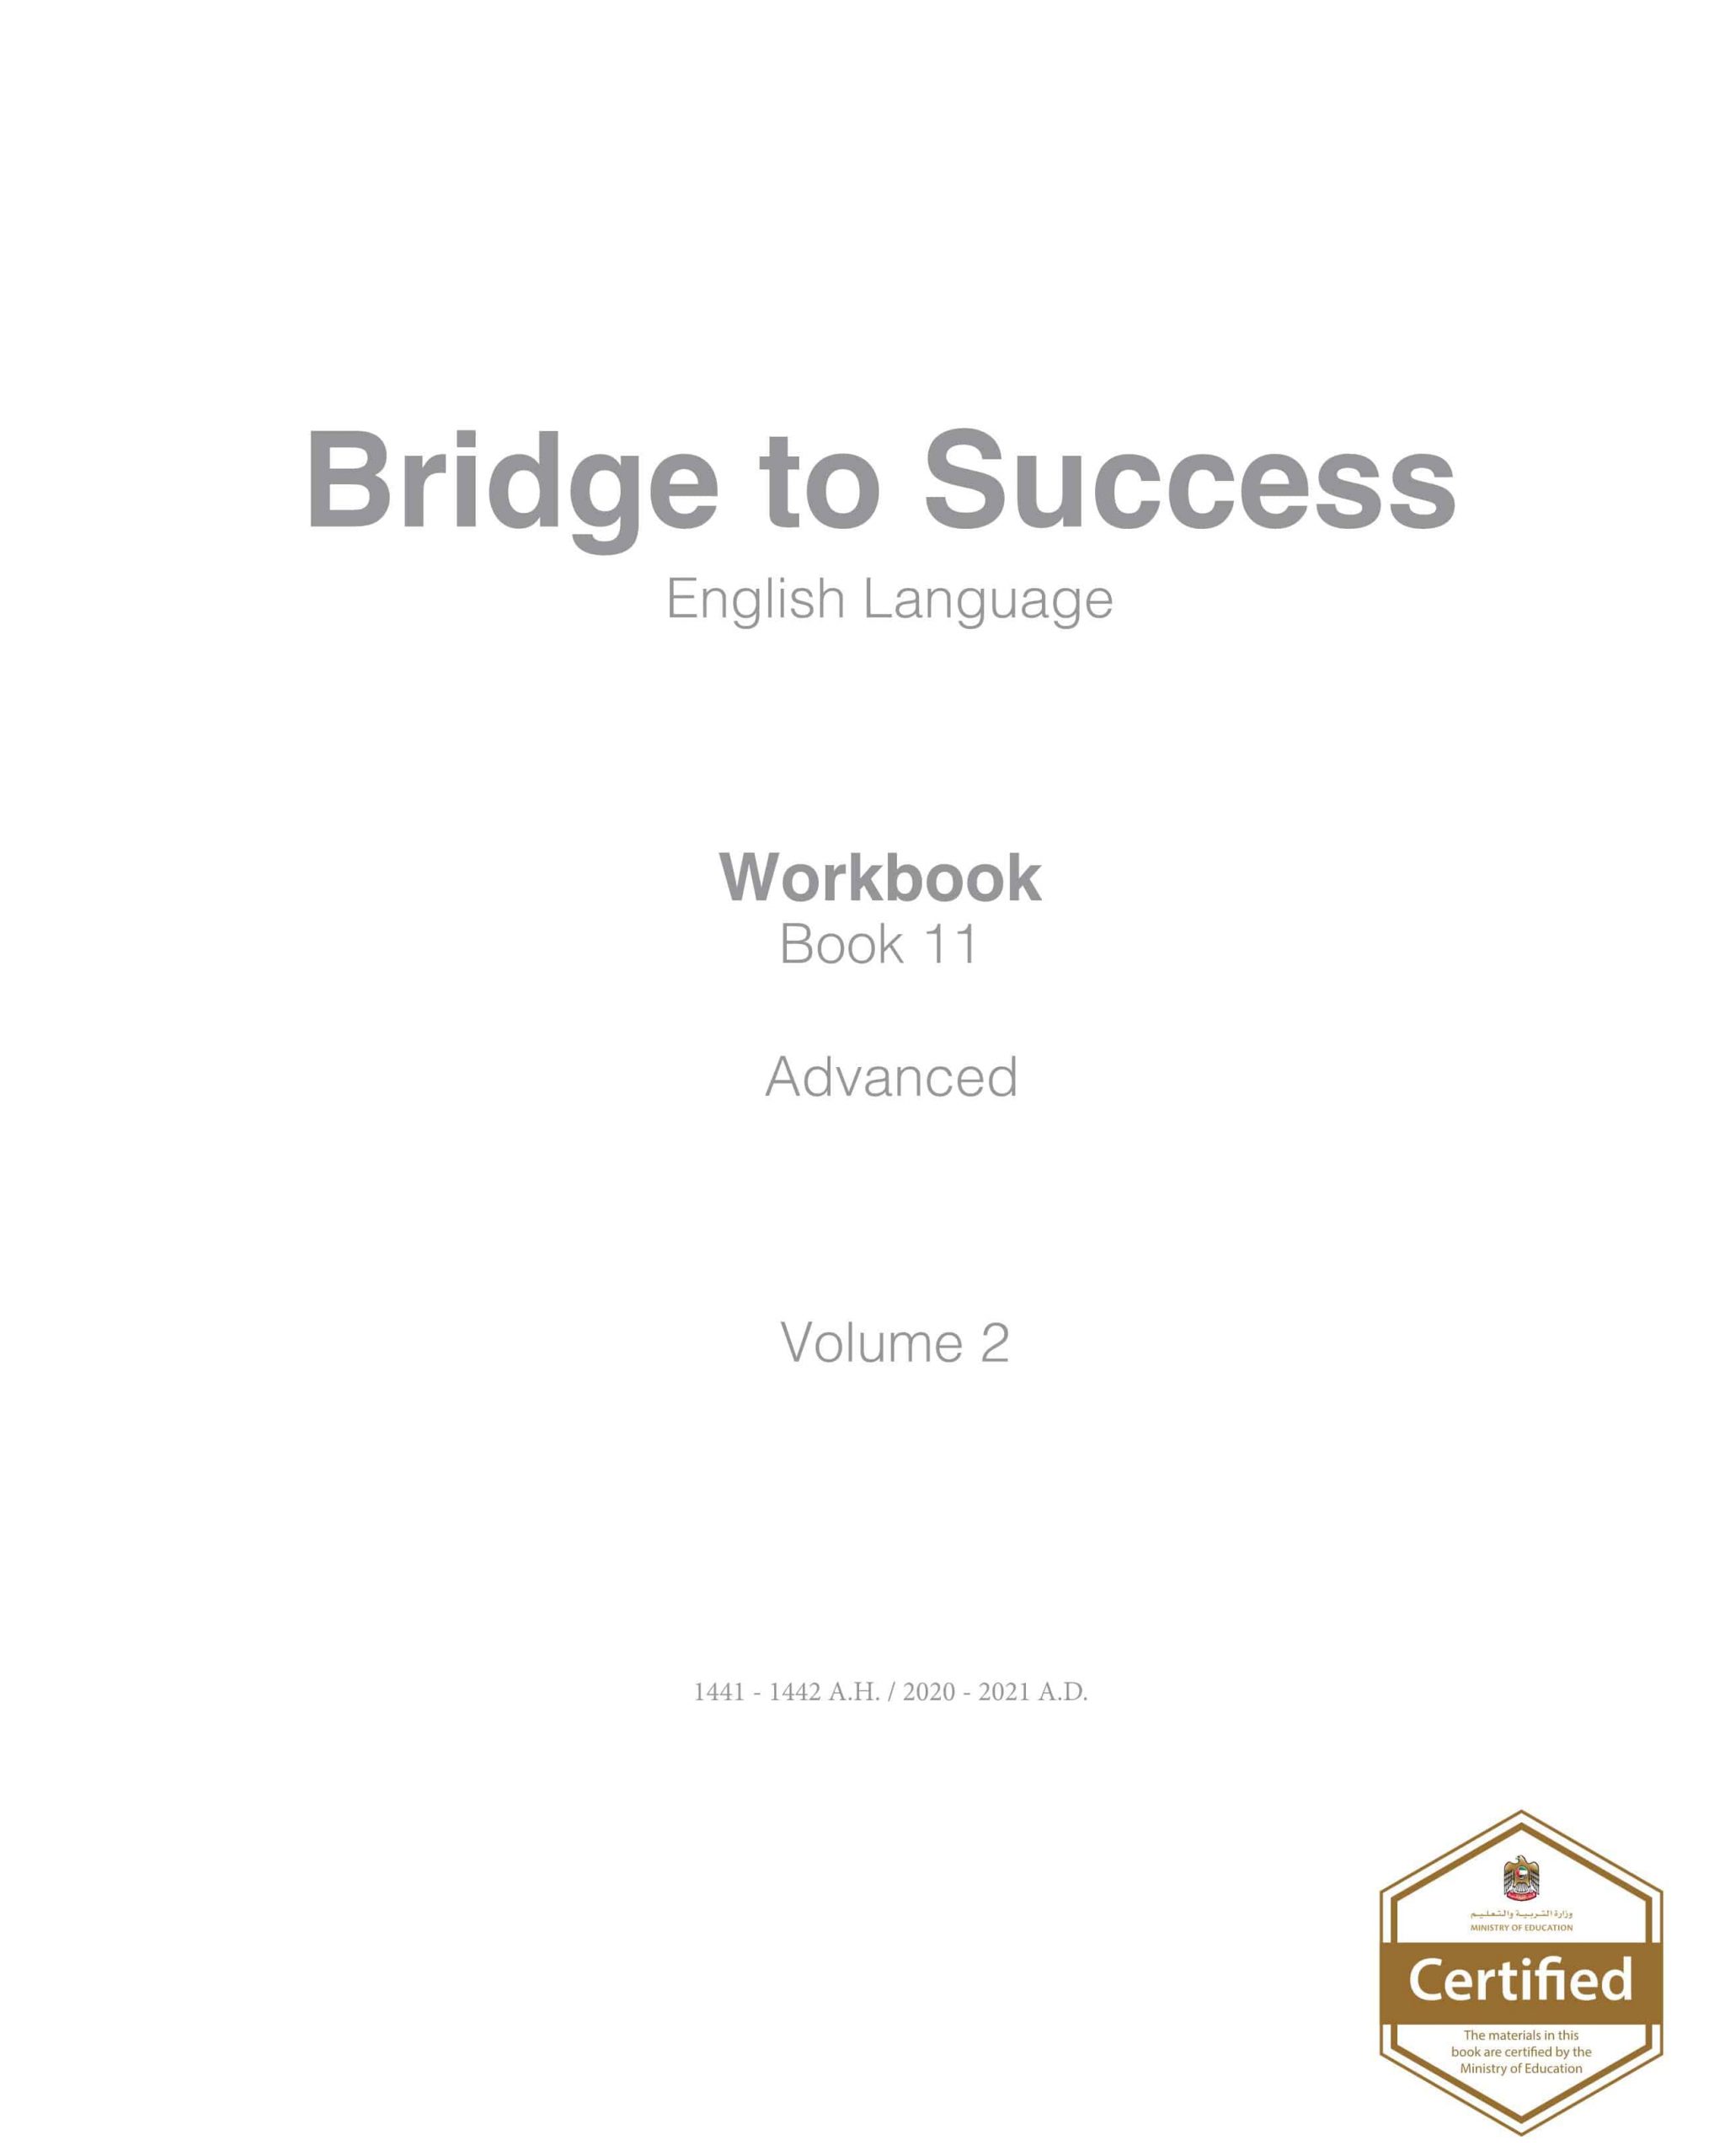 كتاب النشاط Workbook الفصل الدراسي الثاني 2020-2021 الصف الحادي عشر مادة اللغة الانجليزية 